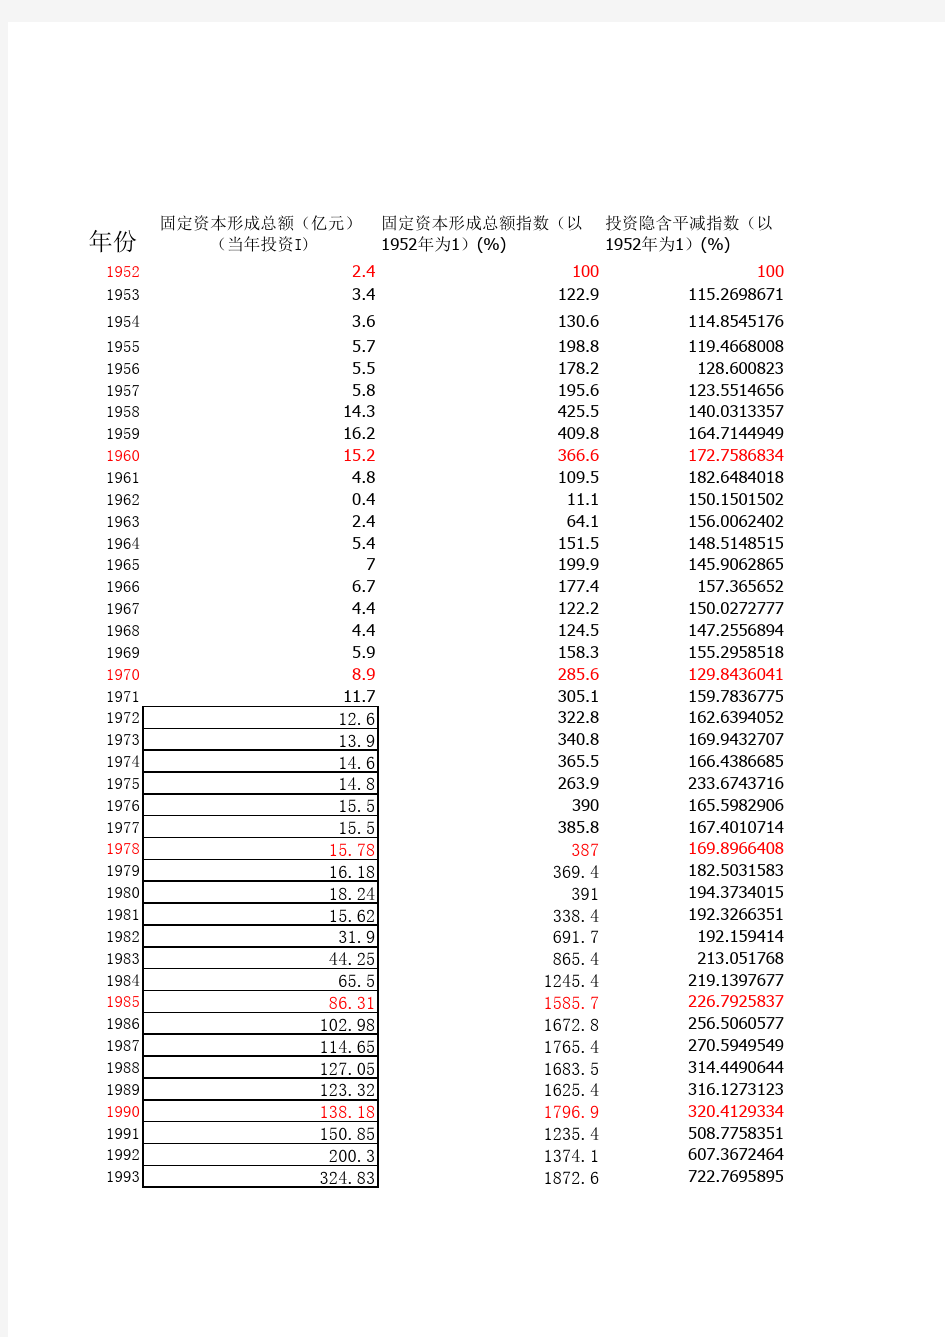 安徽省1952年----2012年的资本存量估算(永续盘存法)